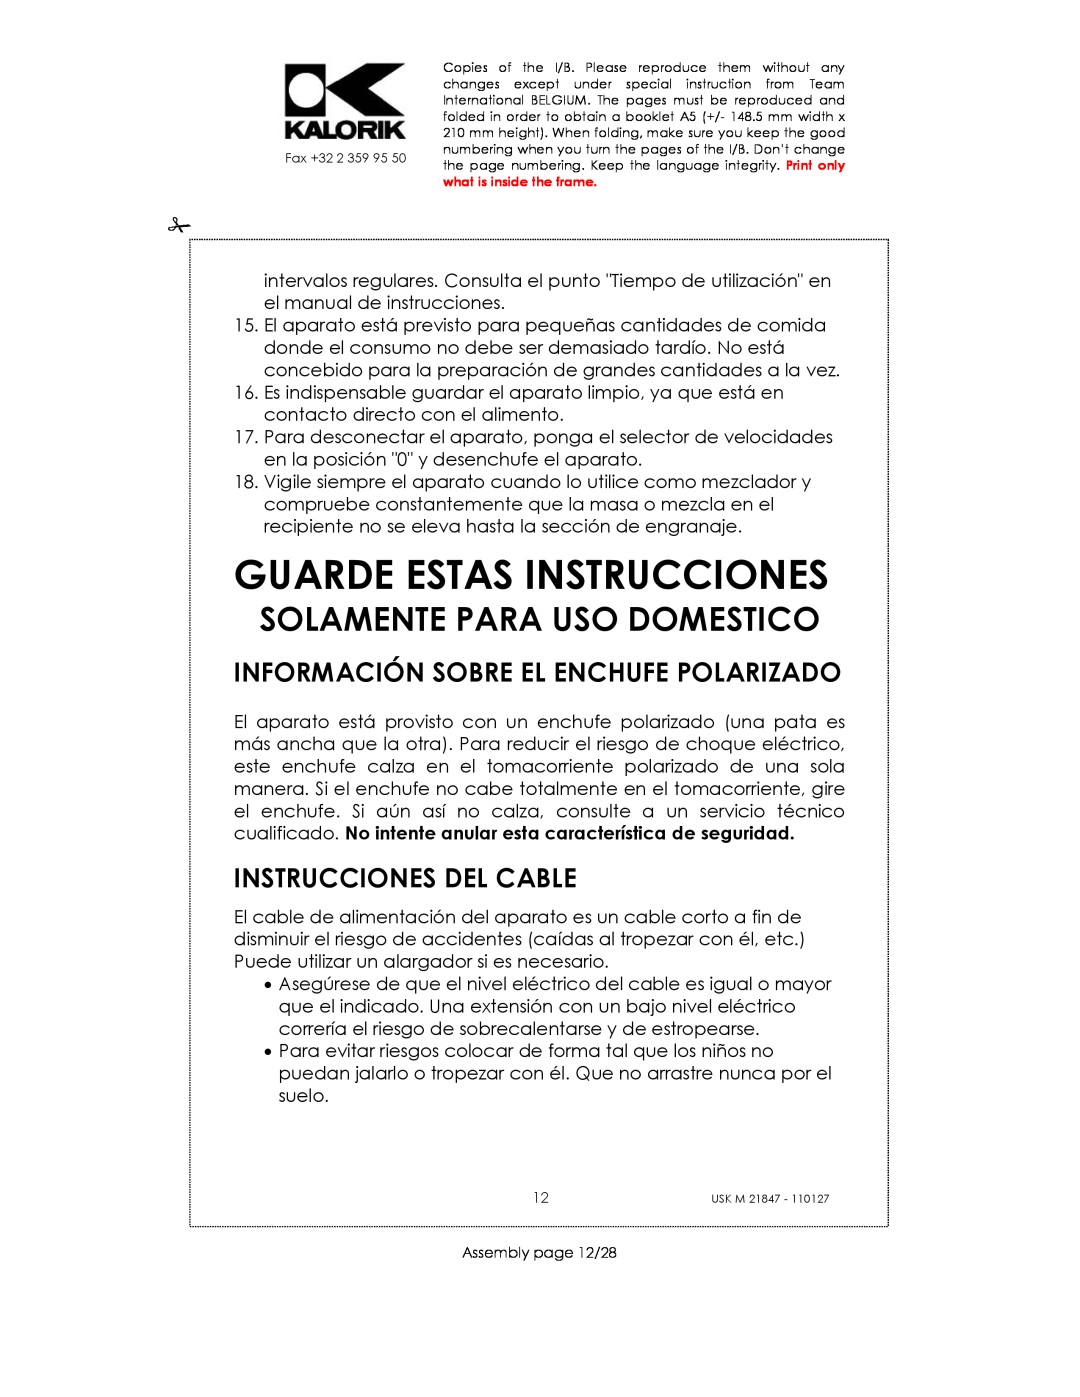 Kalorik USK M 21847 manual Guarde Estas Instrucciones, Información Sobre El Enchufe Polarizado, Instrucciones Del Cable 